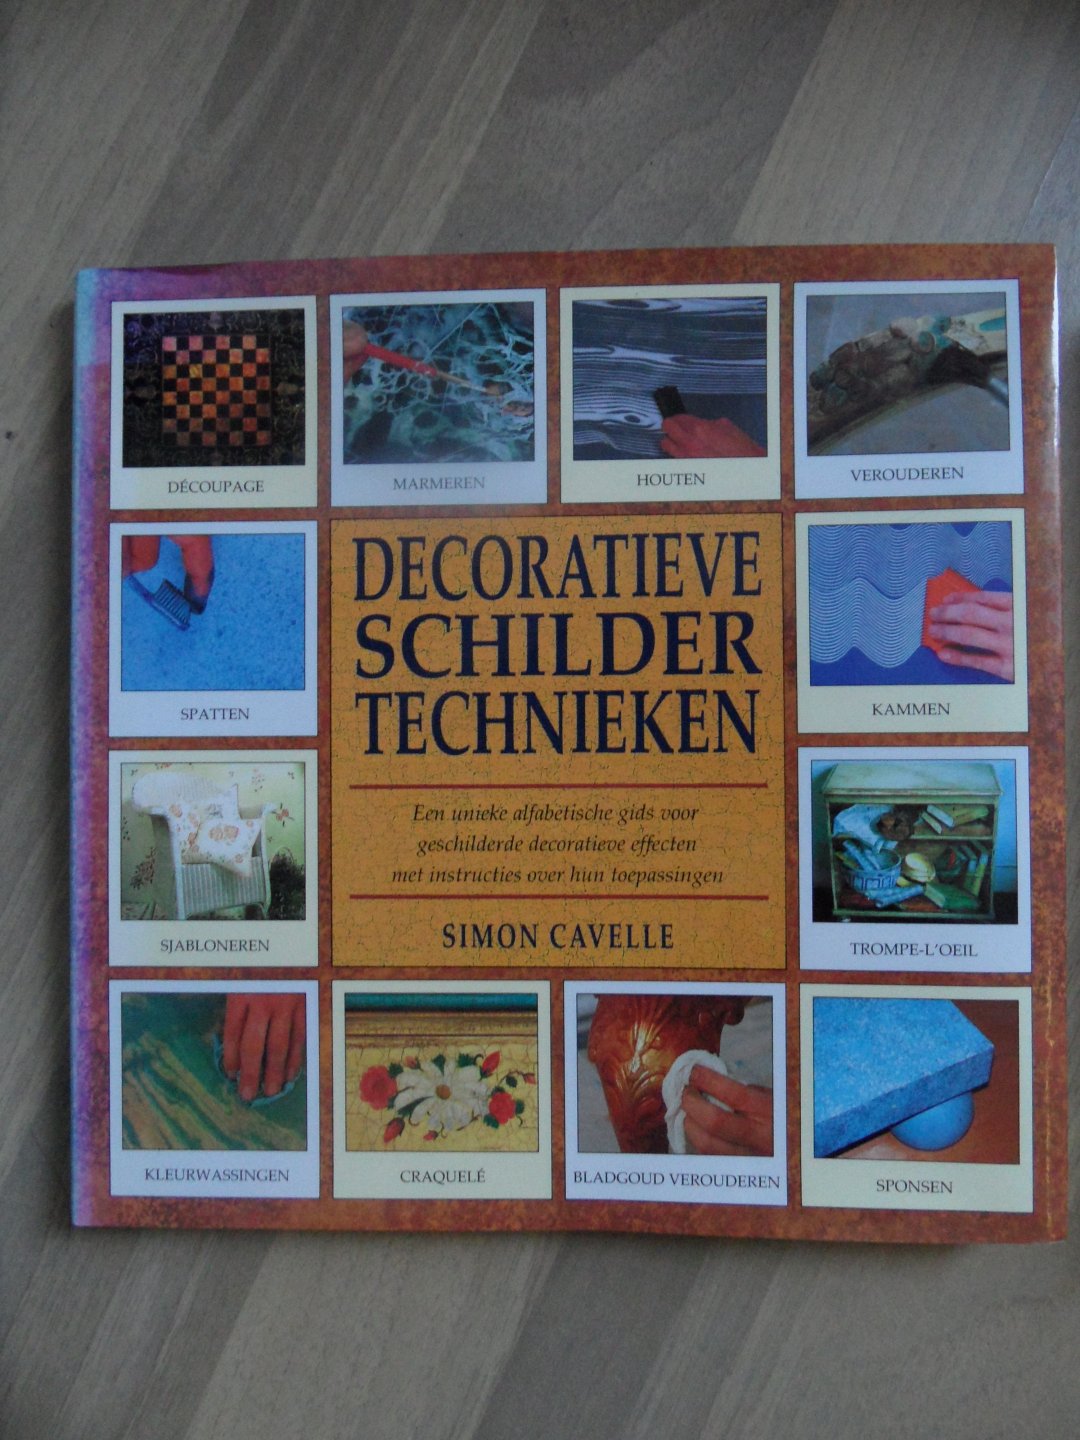 Cavelle, Simon - Decoratieve schildertechnieken. Een unieke alfabetische gids voor geschilderde decoratieve effecten met instructies over hun toepassing